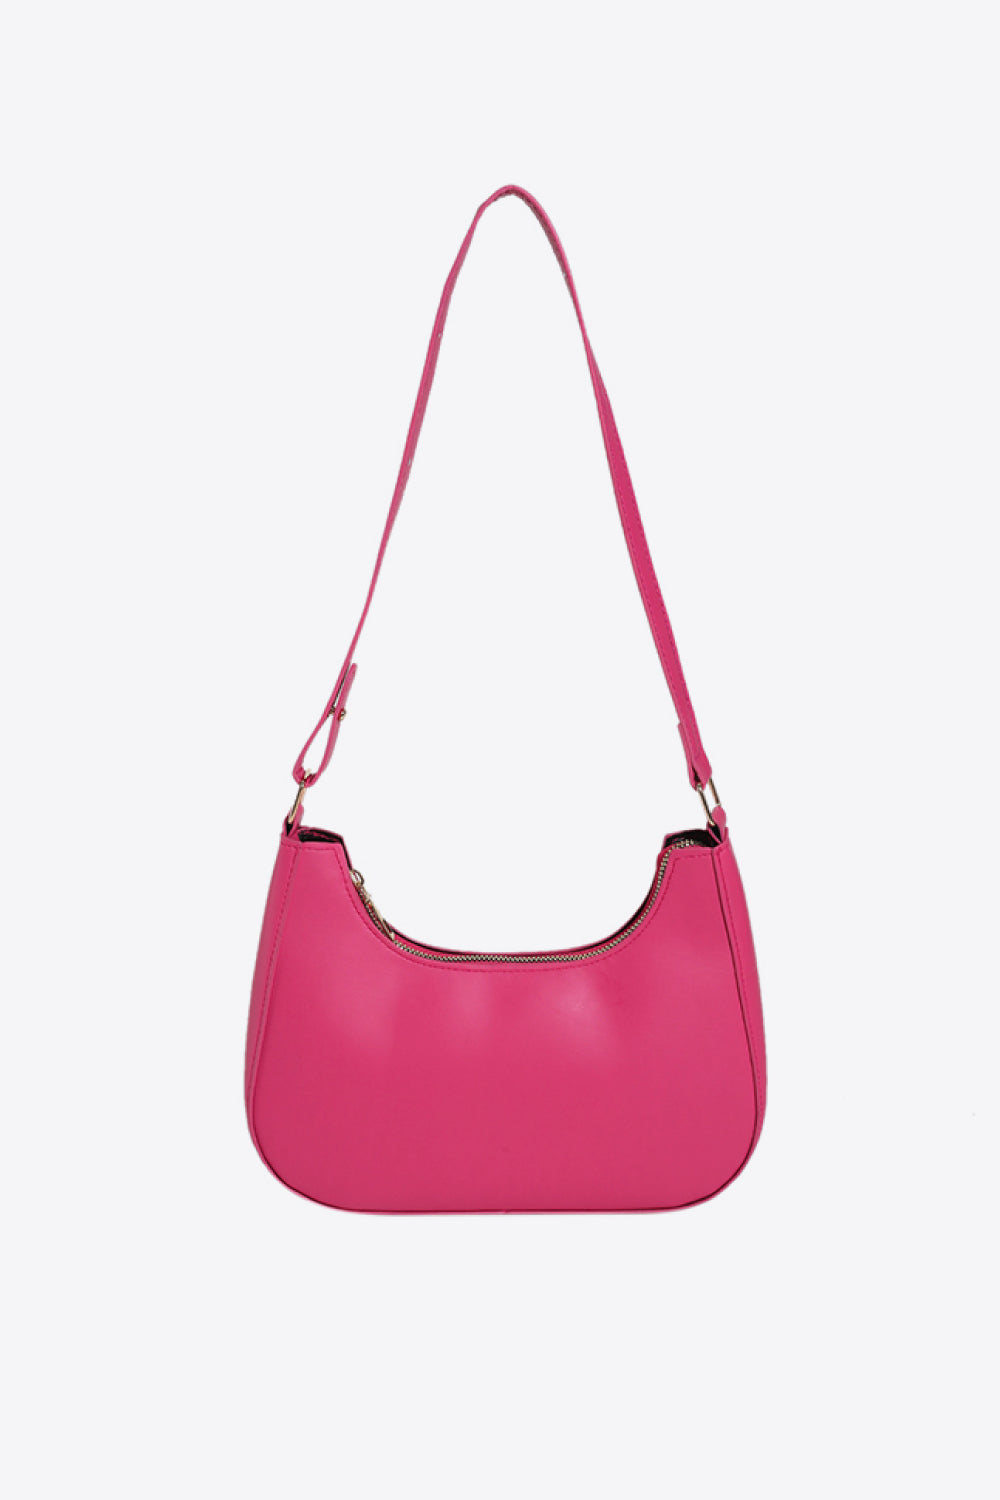 Trendsi Hot Pink / One Size PU Leather Shoulder Bag